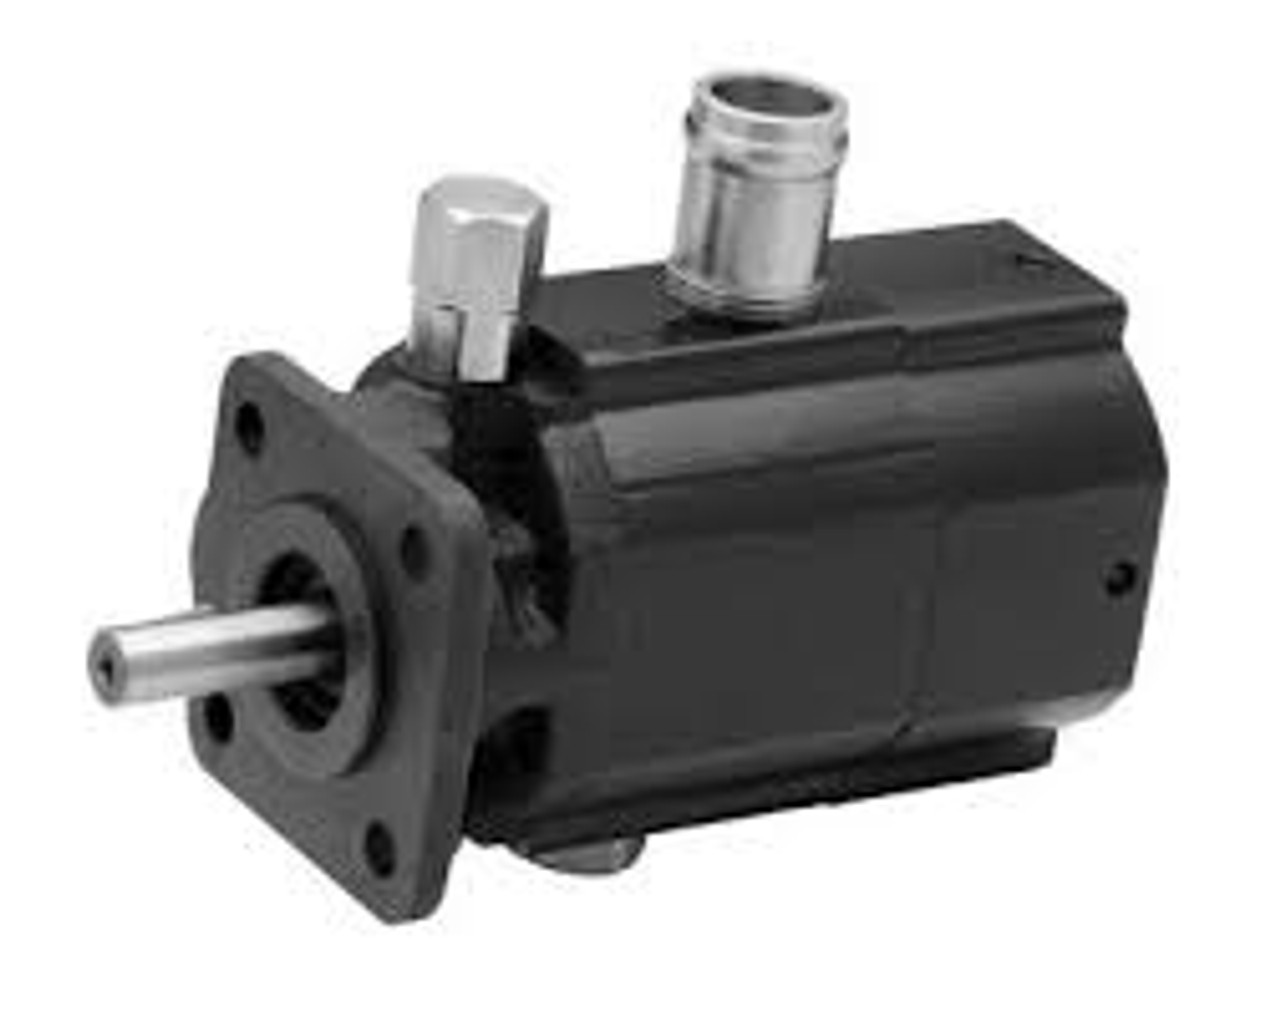 Bobcat 7023115 Hi/Lo 2 stage hydraulic gear pump 9 GPM @ 3600 RPM  Dynamic Fluid Components